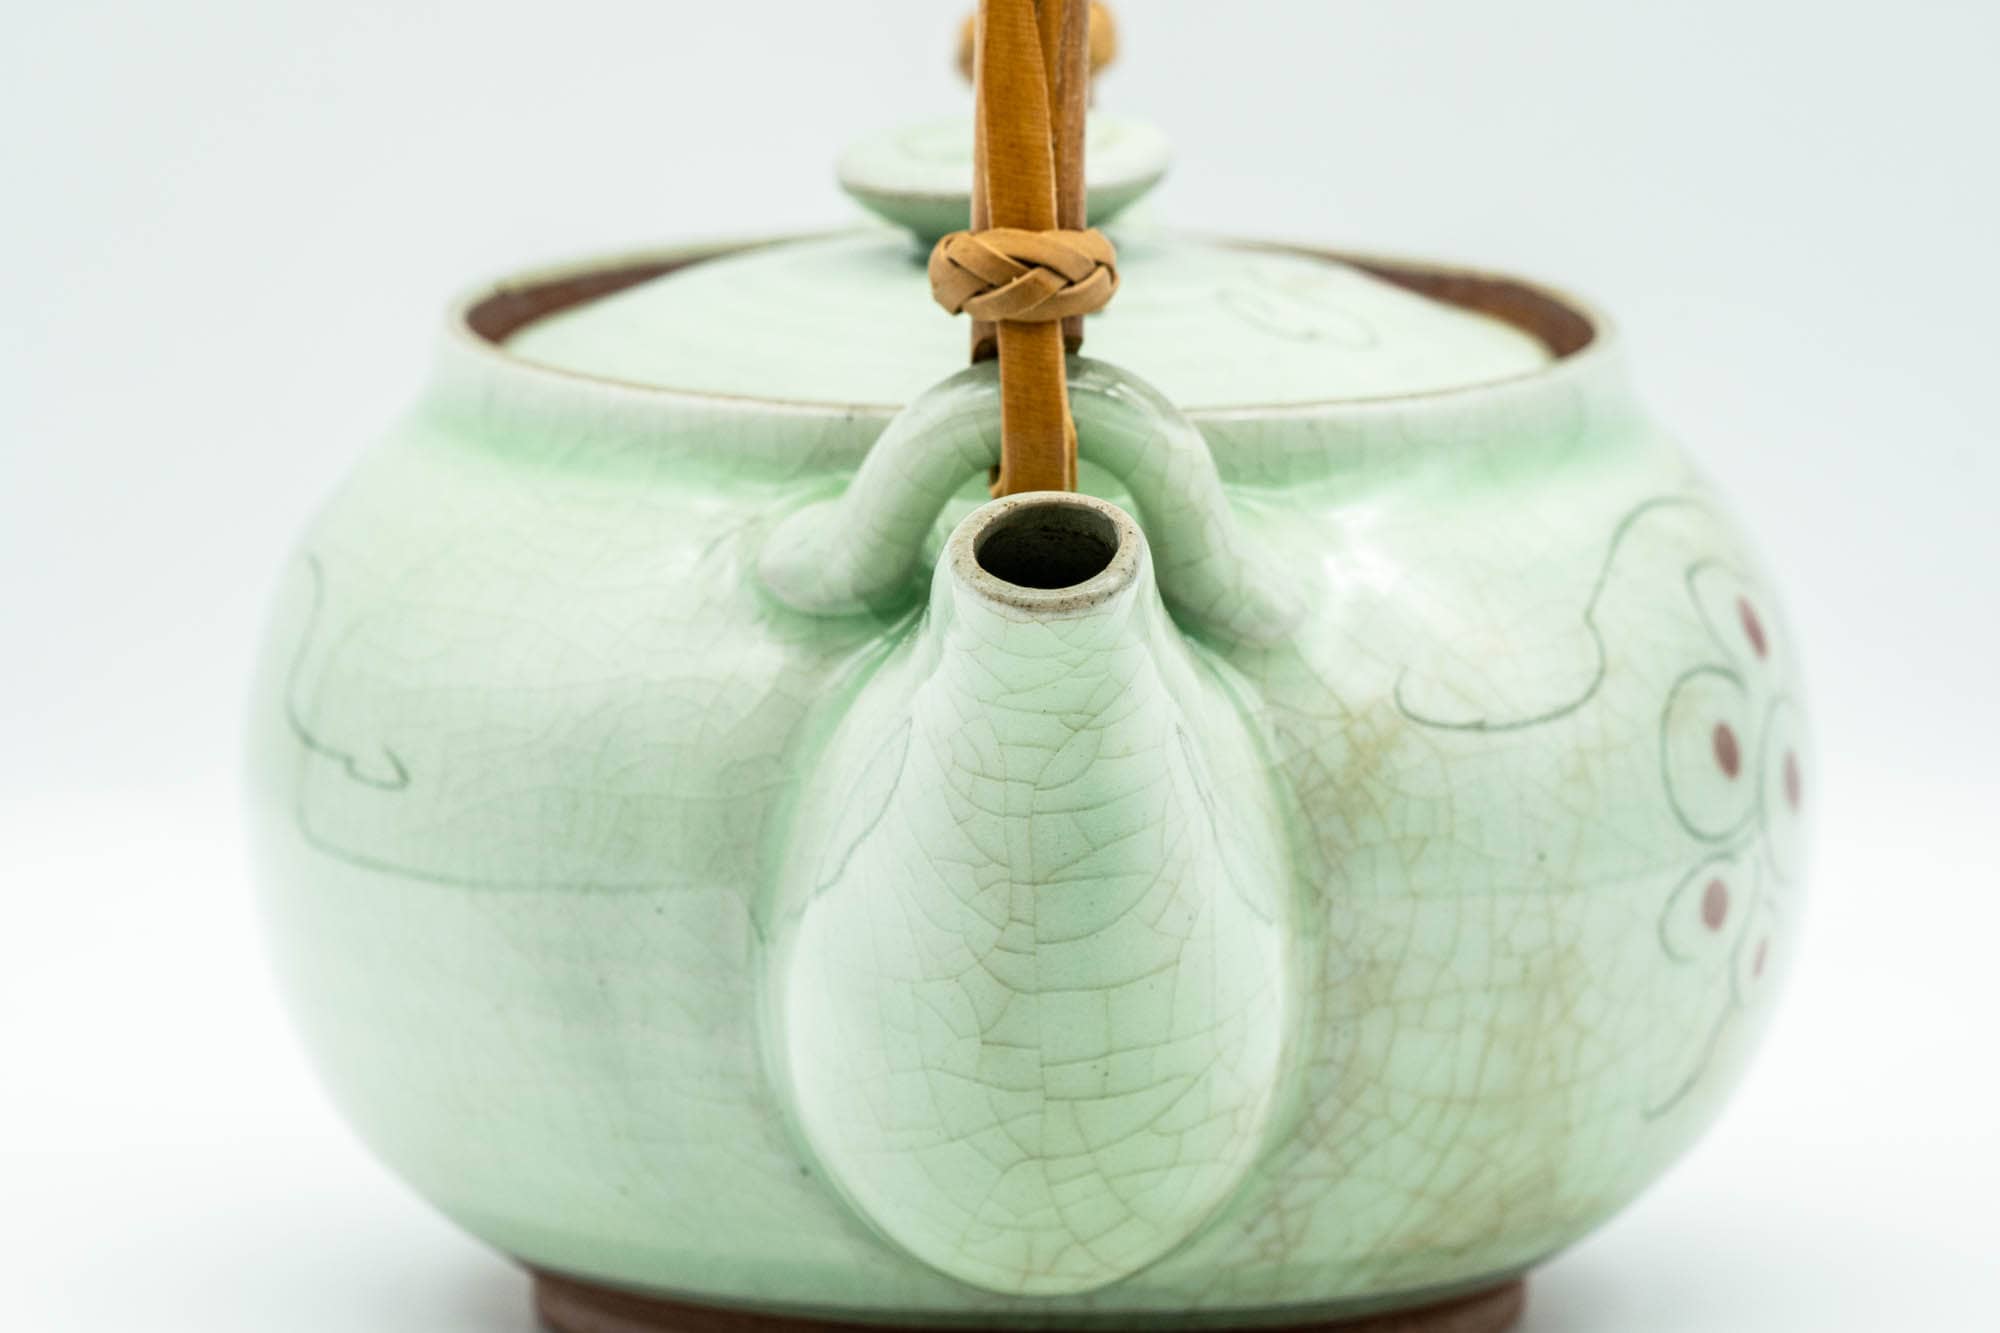 Japanese Dobin - Grapevine Green Celadon Glazed Debeso Teapot - 450ml